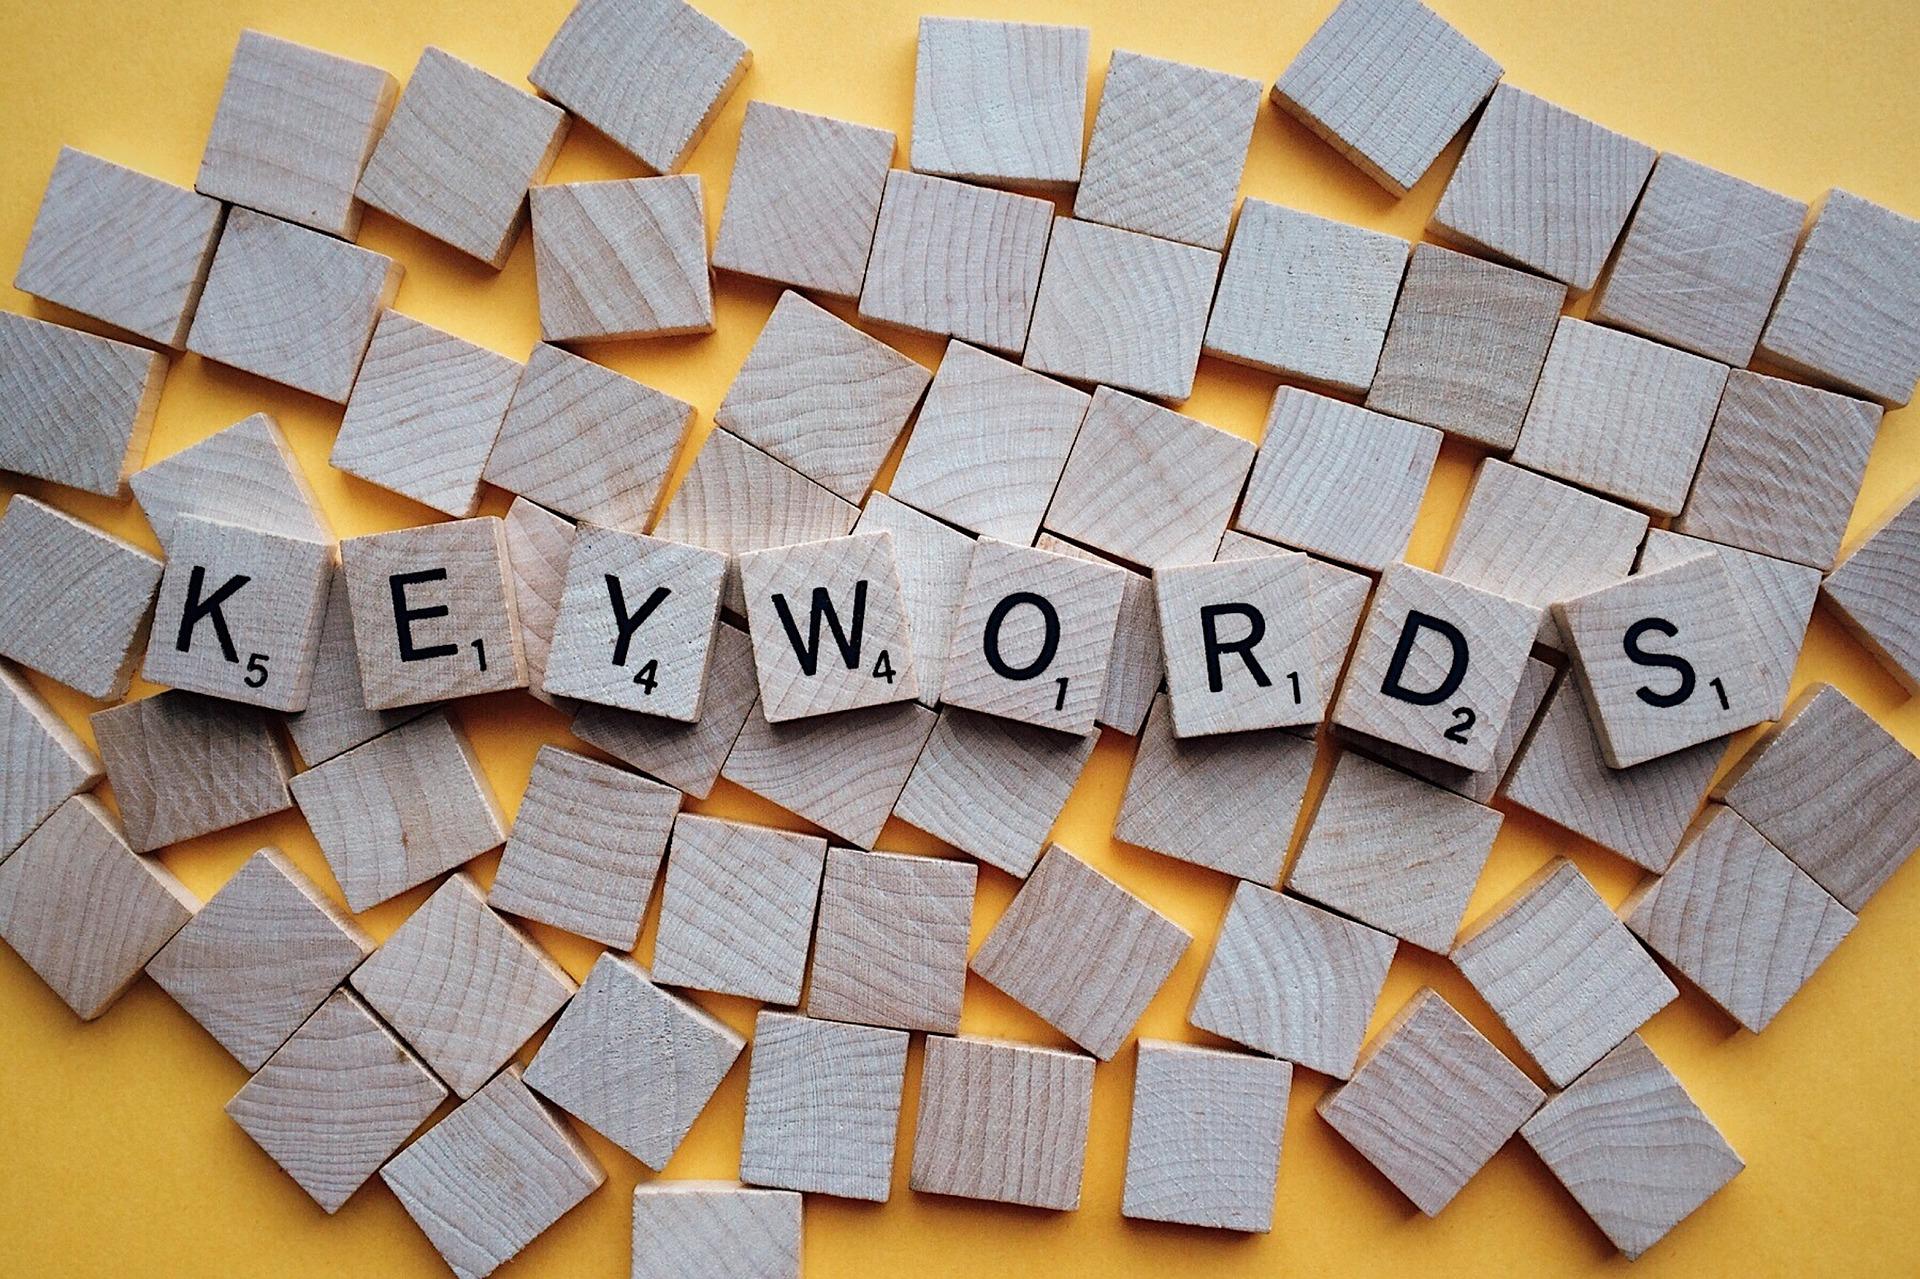 scrabble blocks spelling 'keywords'